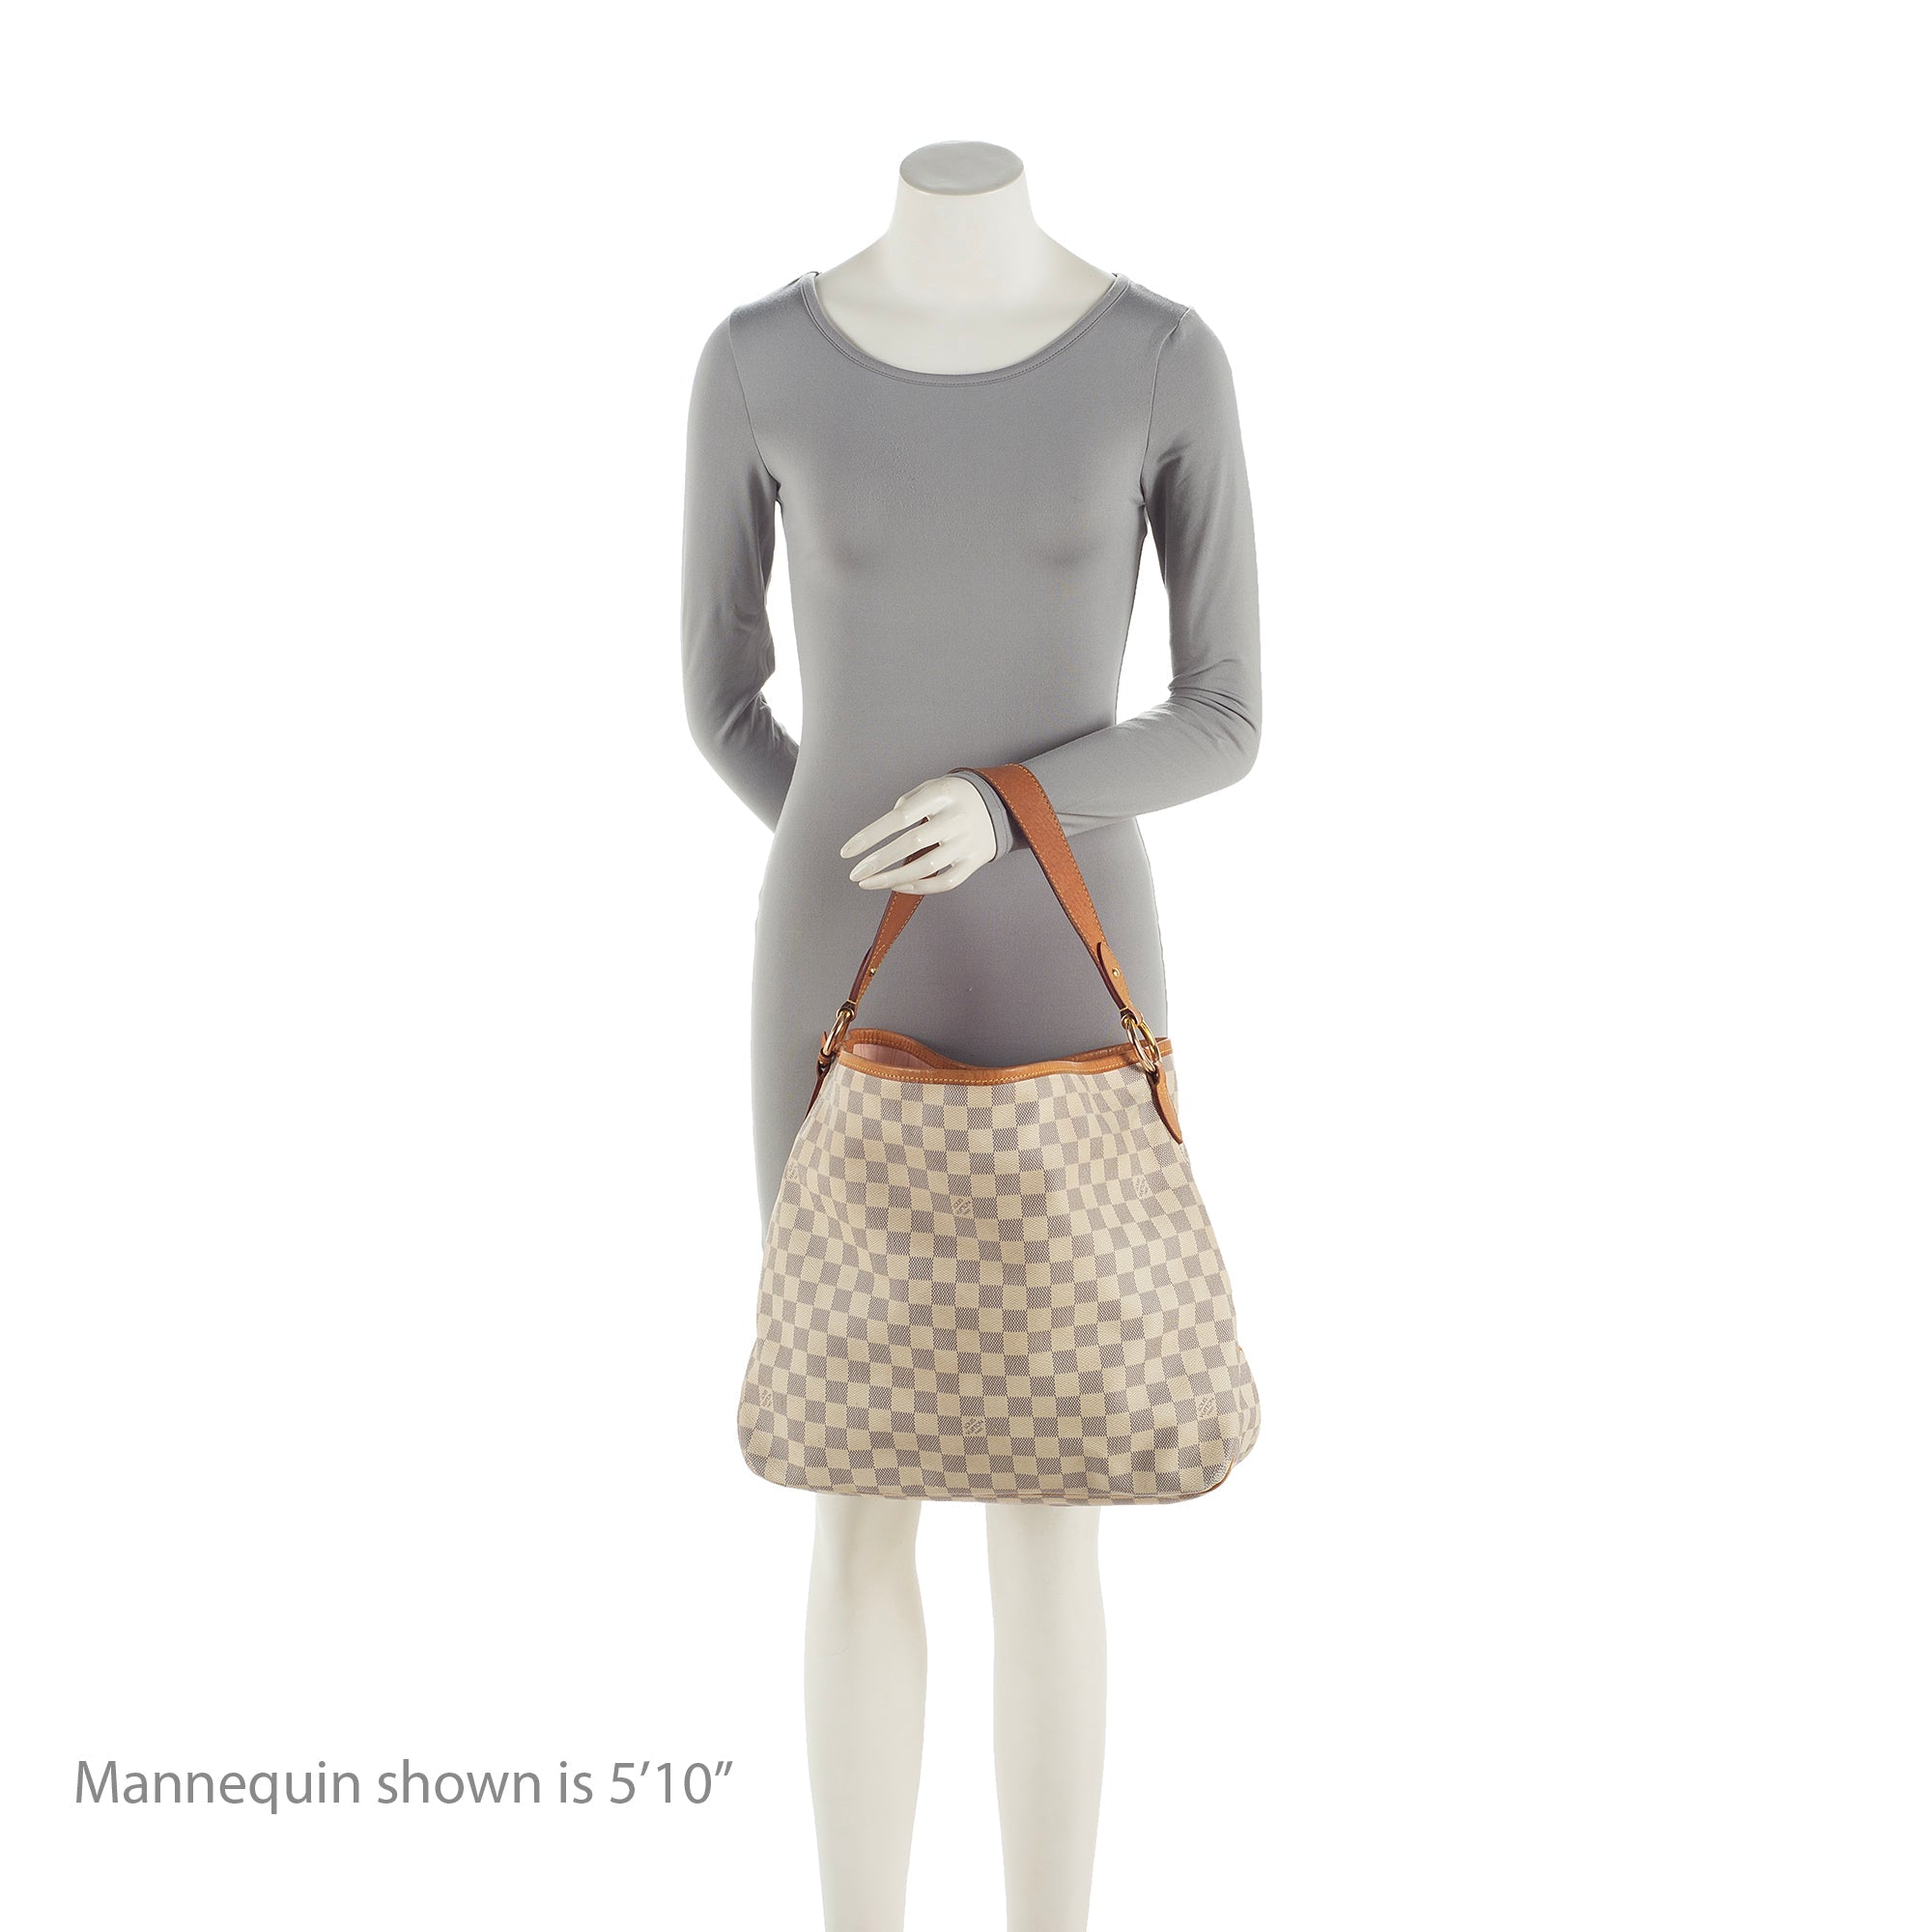 Louis Vuitton Damier Azur Delightful MM Shoulder Bag